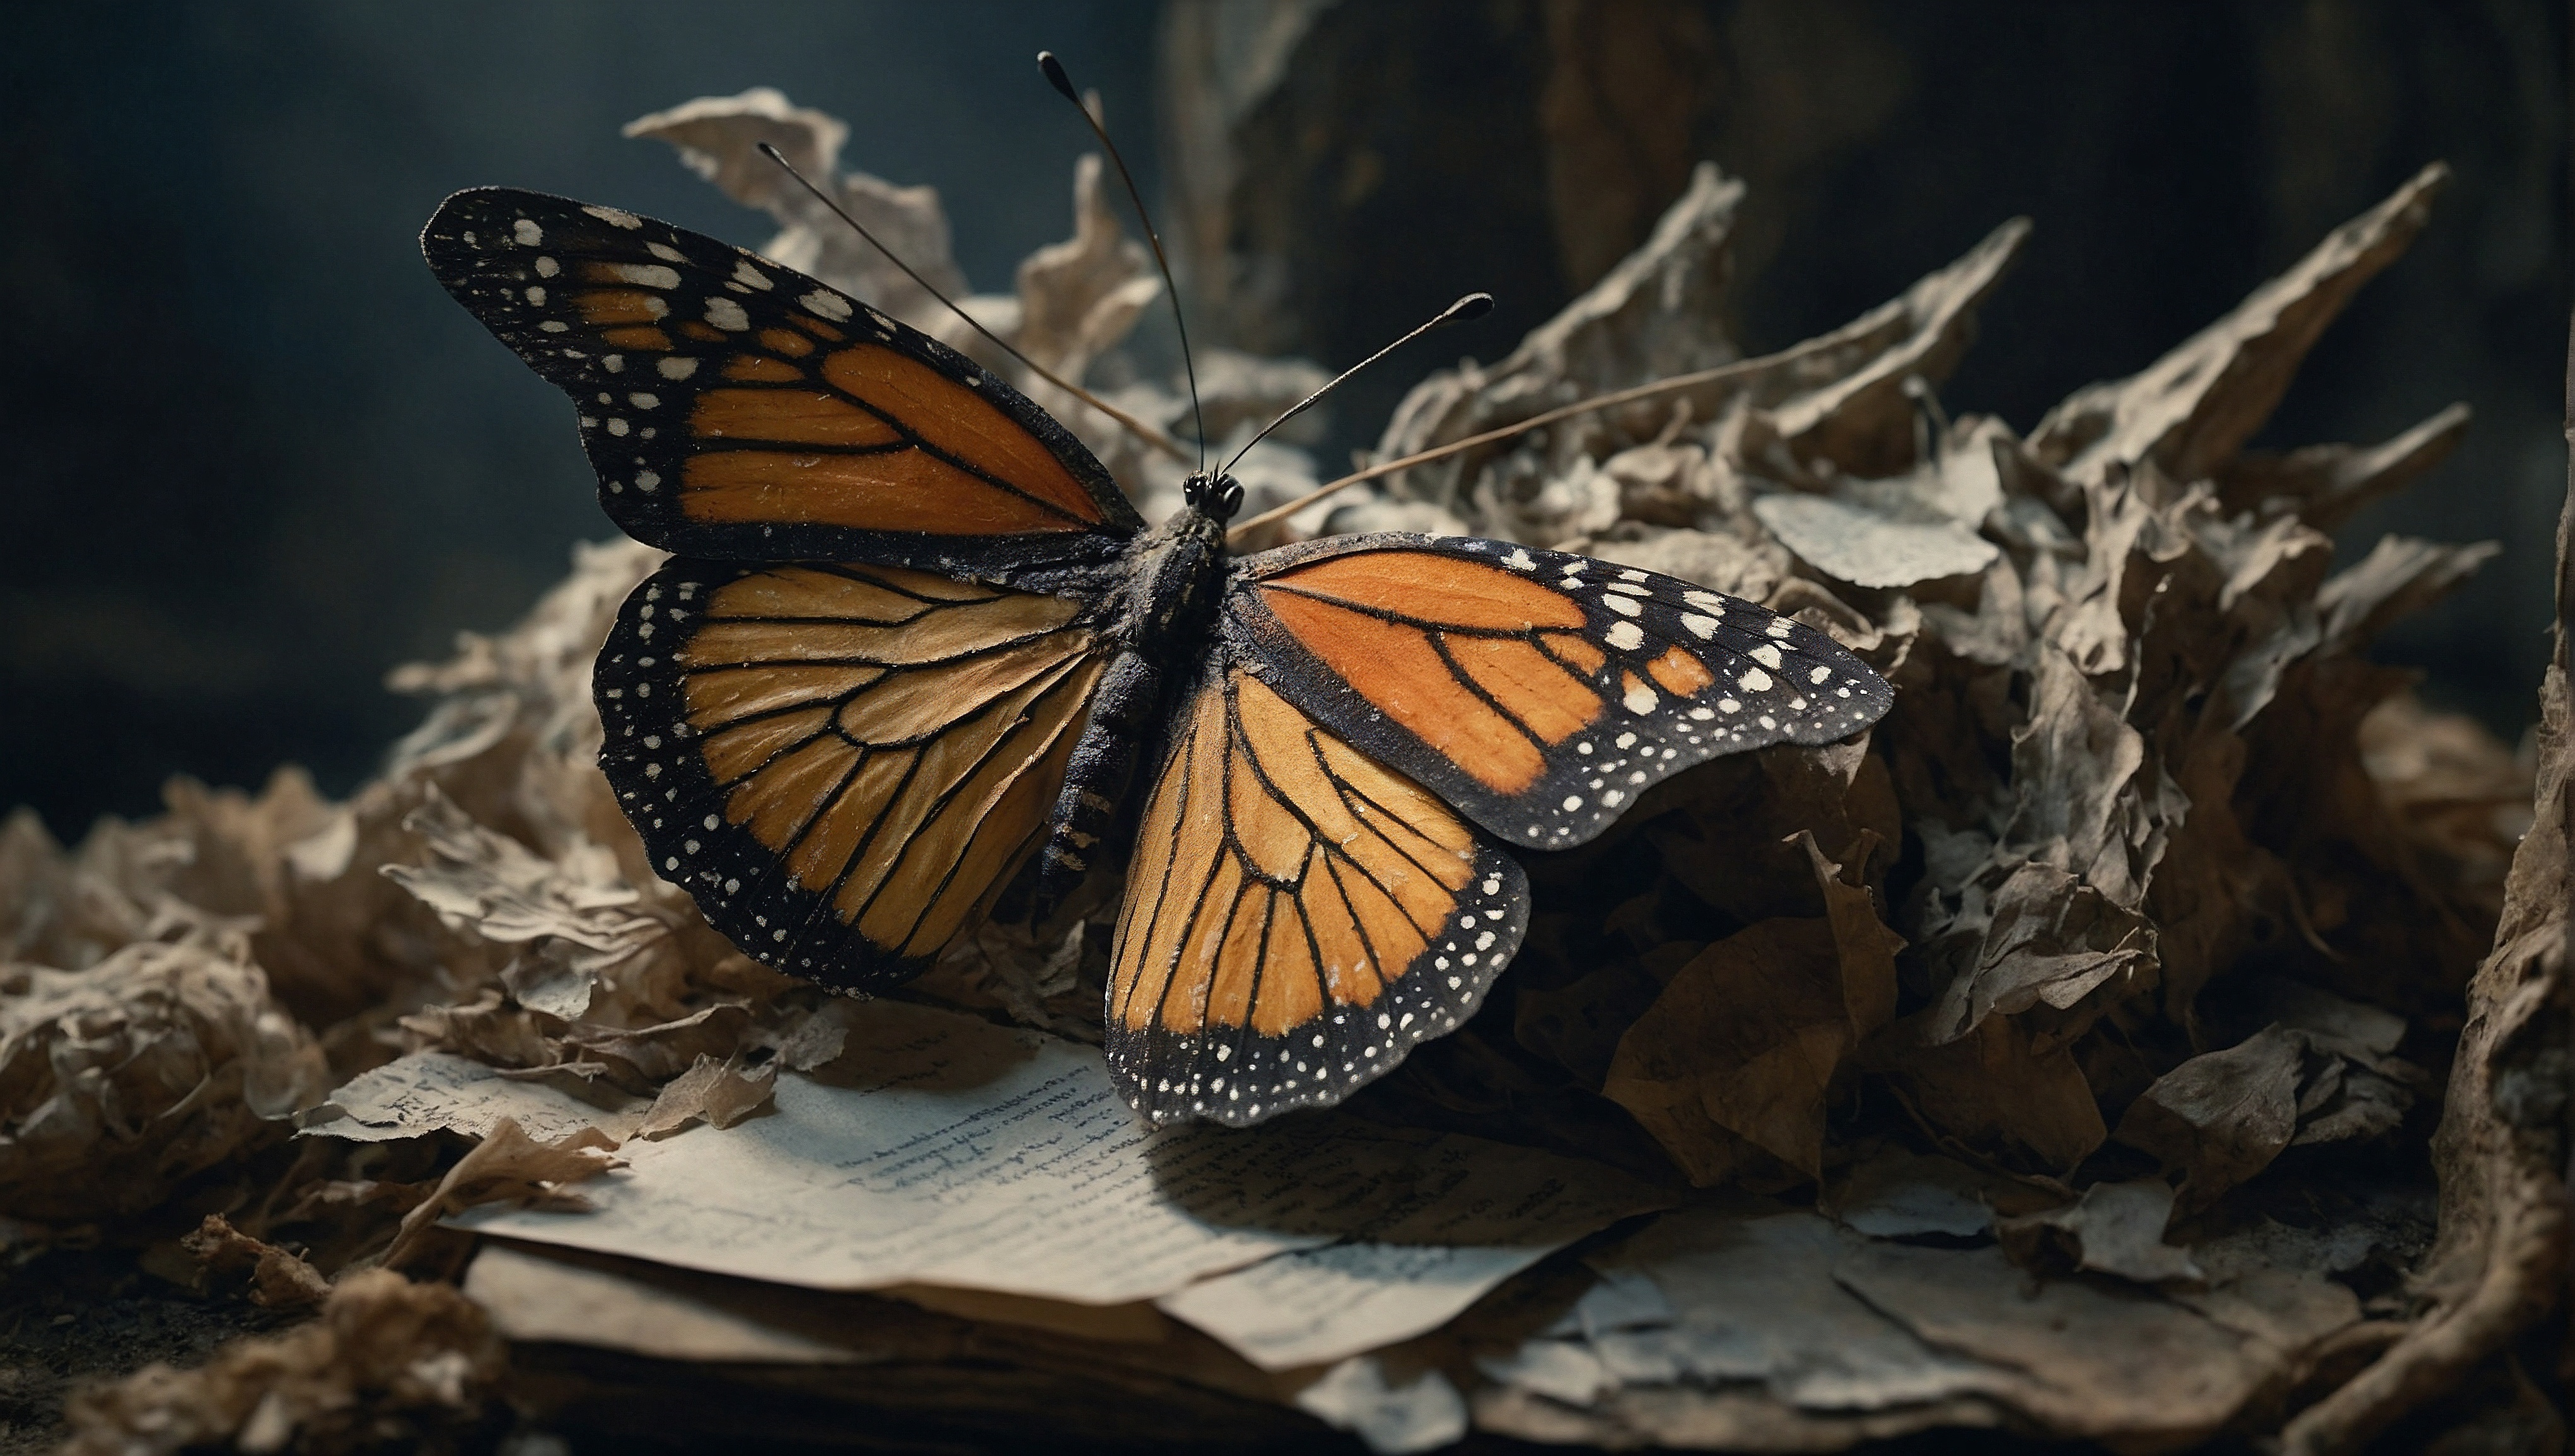 Оранжево-черная бабочка на подстилке из мертвых листьев